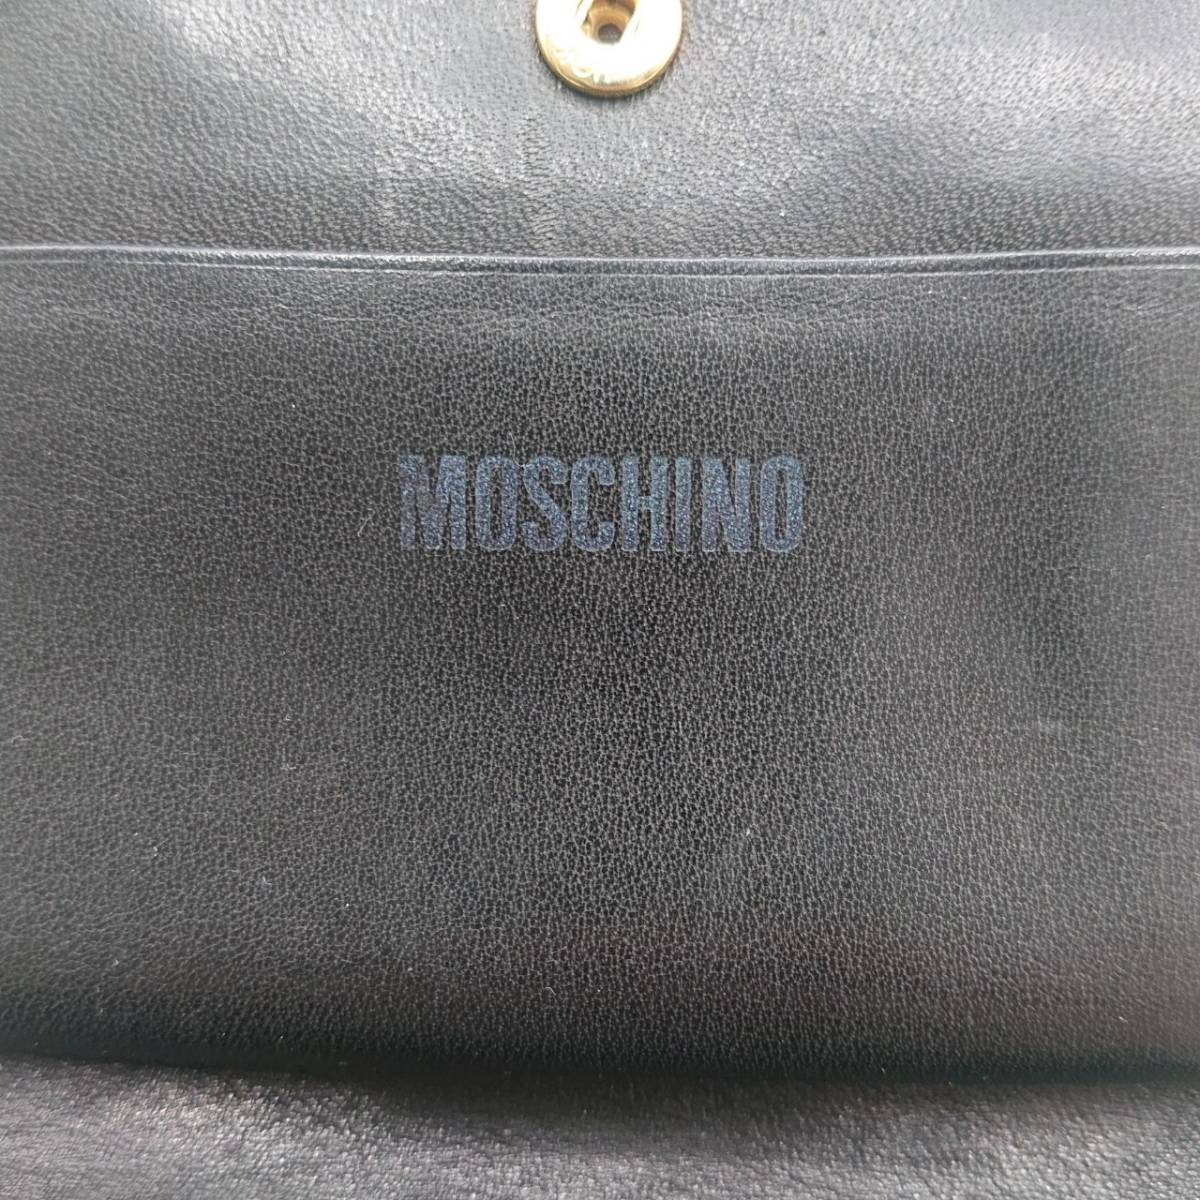 MOSCHINO モスキーノ 二つ折り 財布 レザー ハート柄 ブラック×ゴールド レディース L字ファスナー